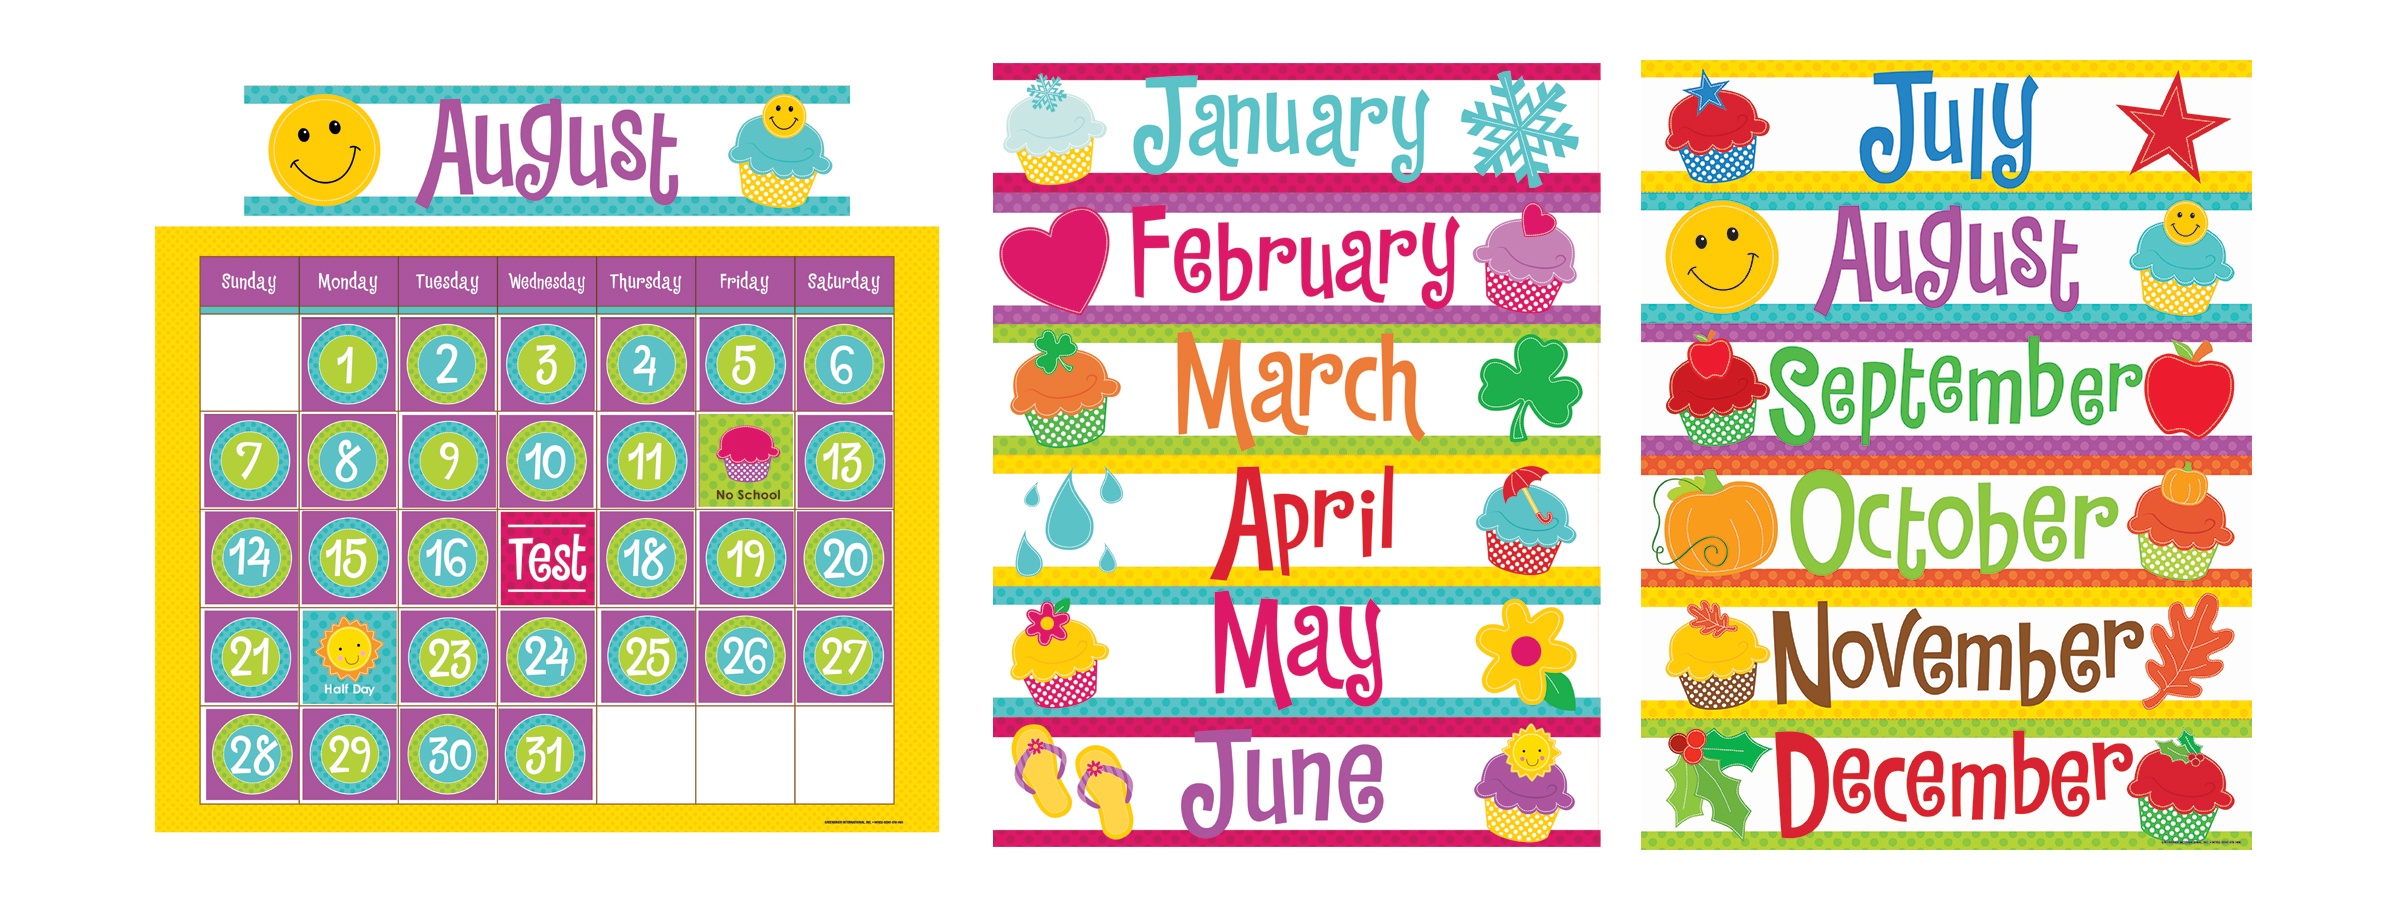 Lauren Gregory » Cupcake_Calendar